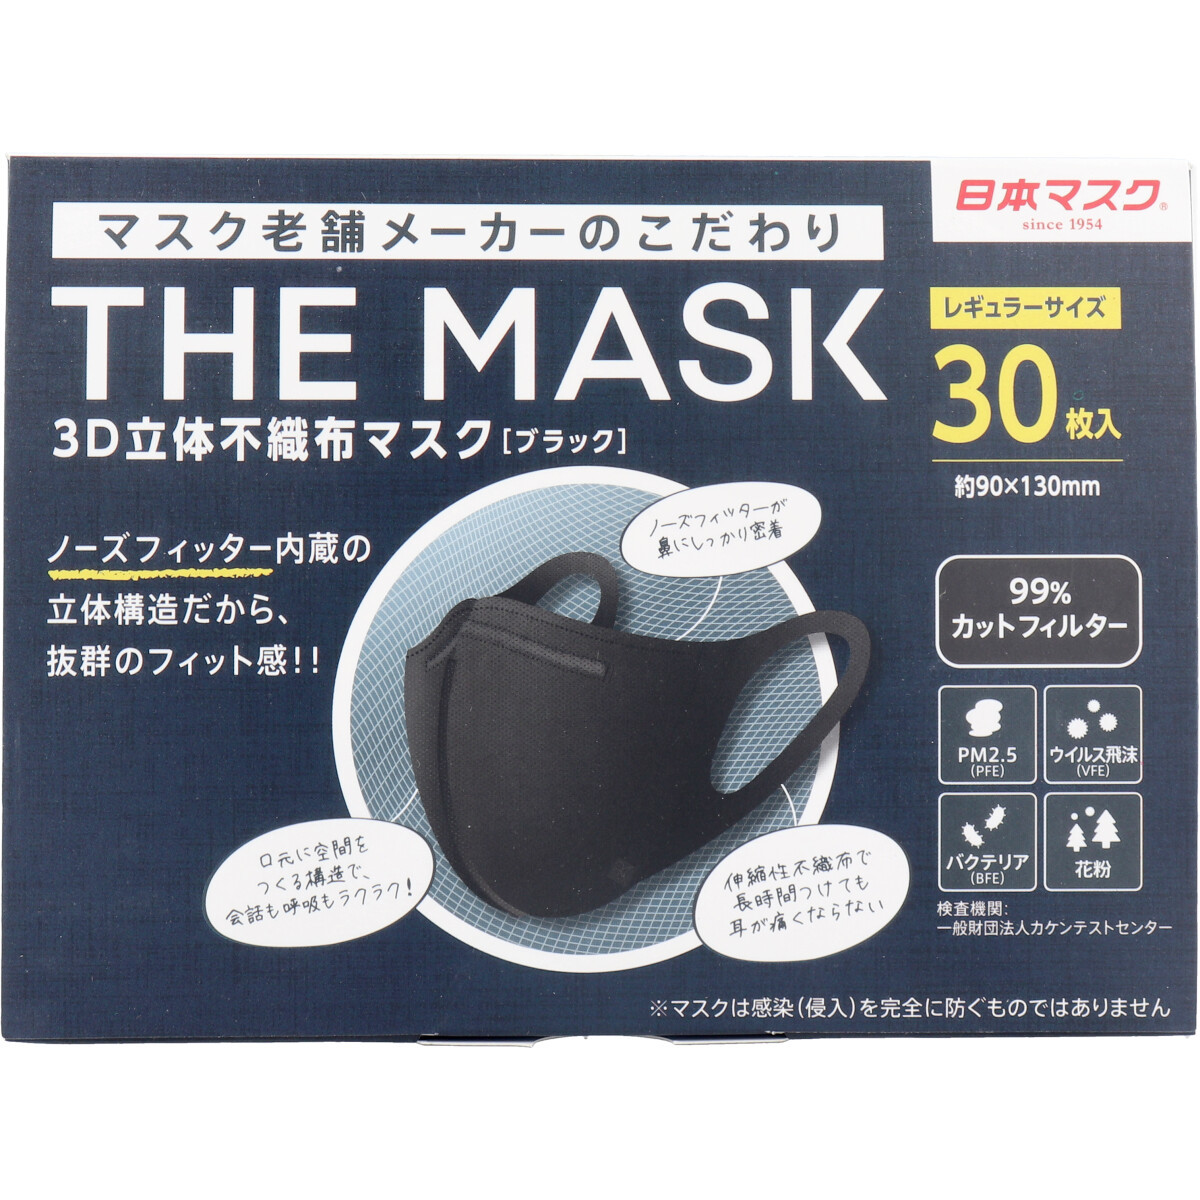 まとめ得 THE MASK 3D立体不織布マスク ブラック レギュラーサイズ 30枚入 x [12個] /k_画像2